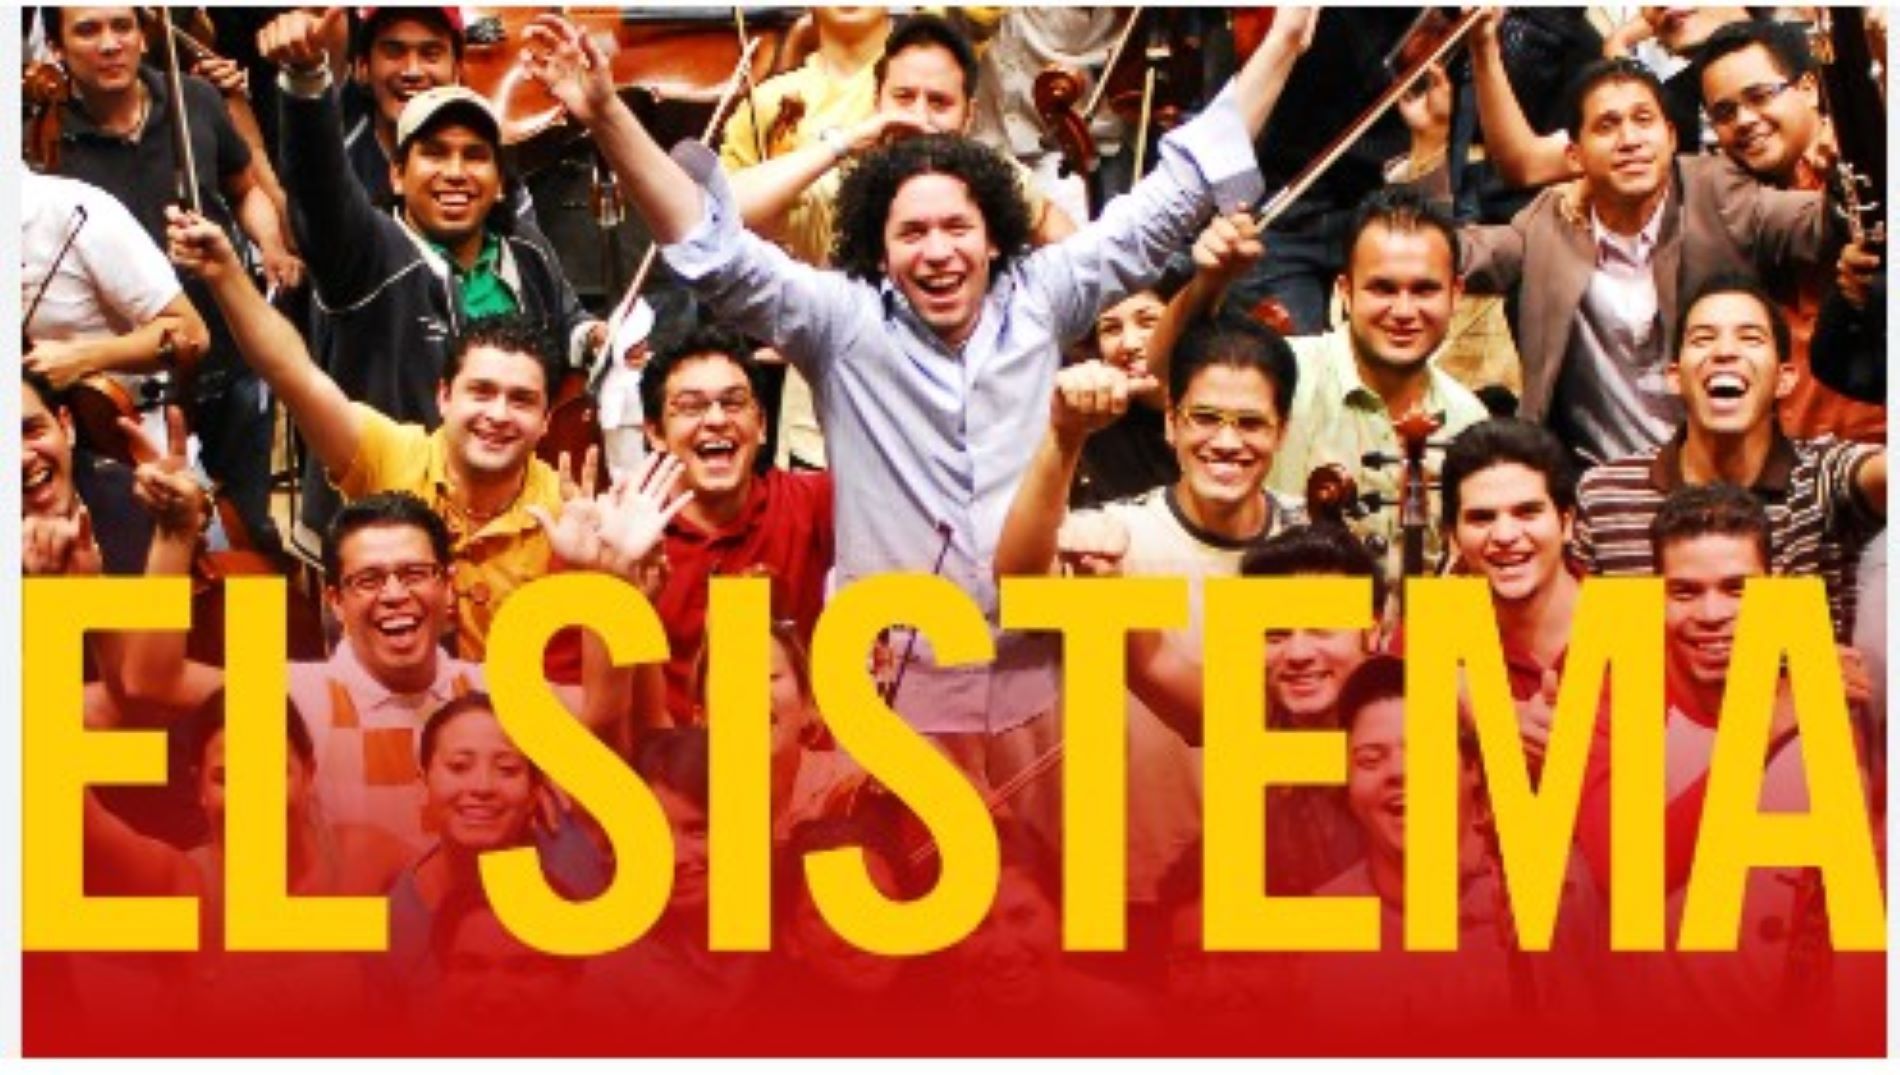 El Sistema adalah program pendidikan musik yang dikhususkan bagi anak-anak oleh pemerintah Venezuela untuk mengalihkan perhatian anak-anak dari kekerasan, perang, dan adu senjata/